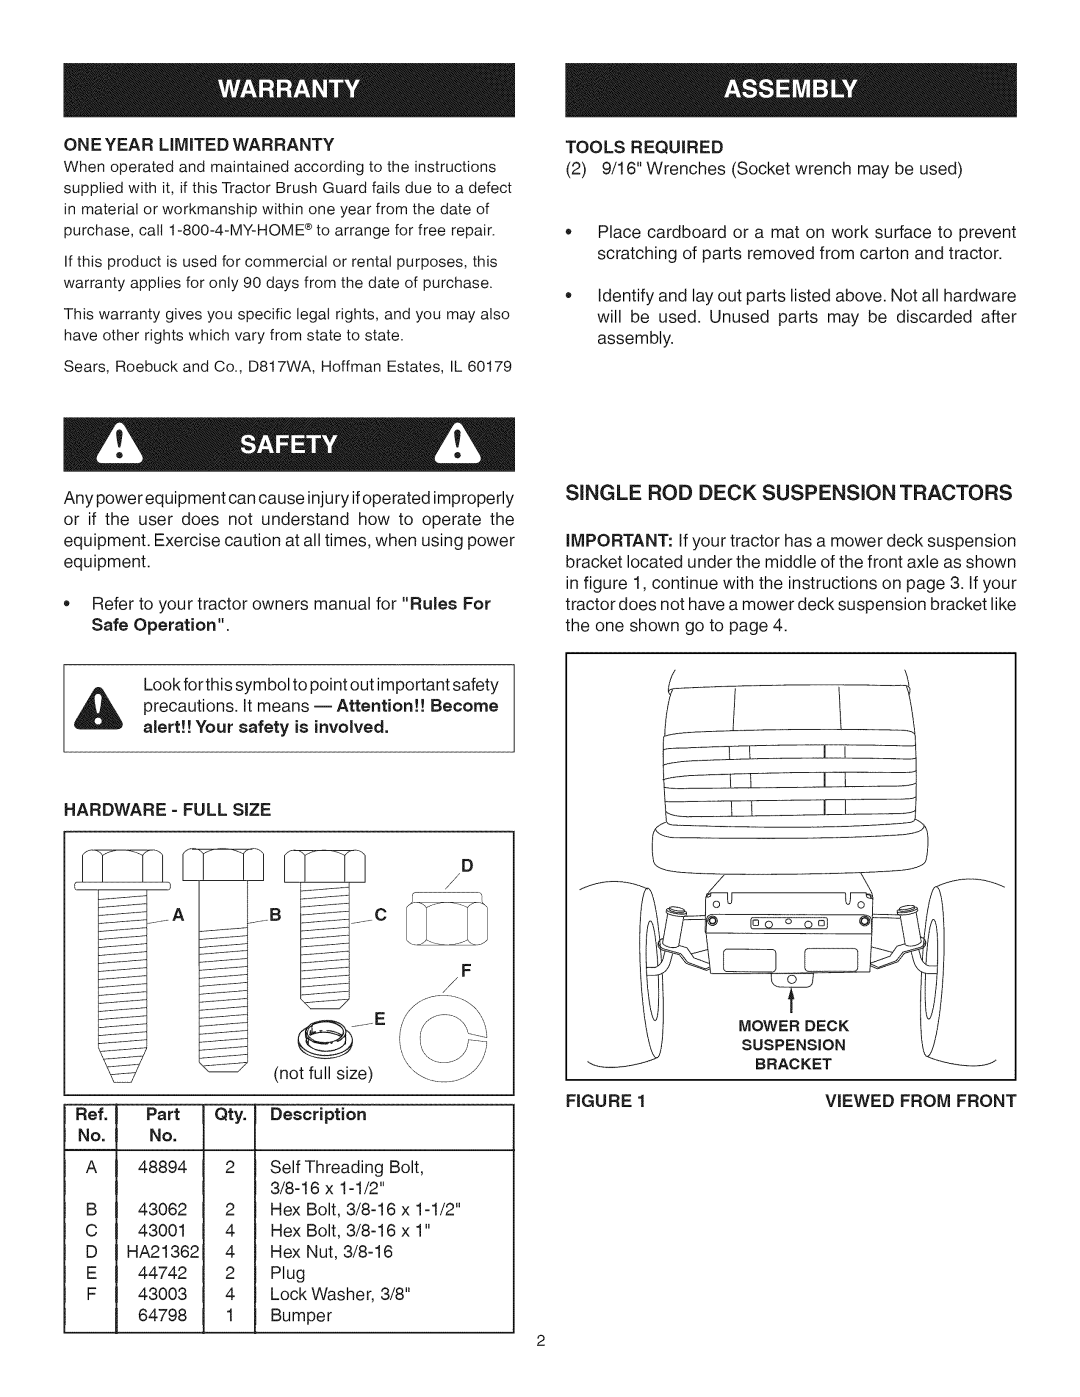 Craftsman 486.245992 manual Single Rod Deck Suspension Tractors, qT-t 